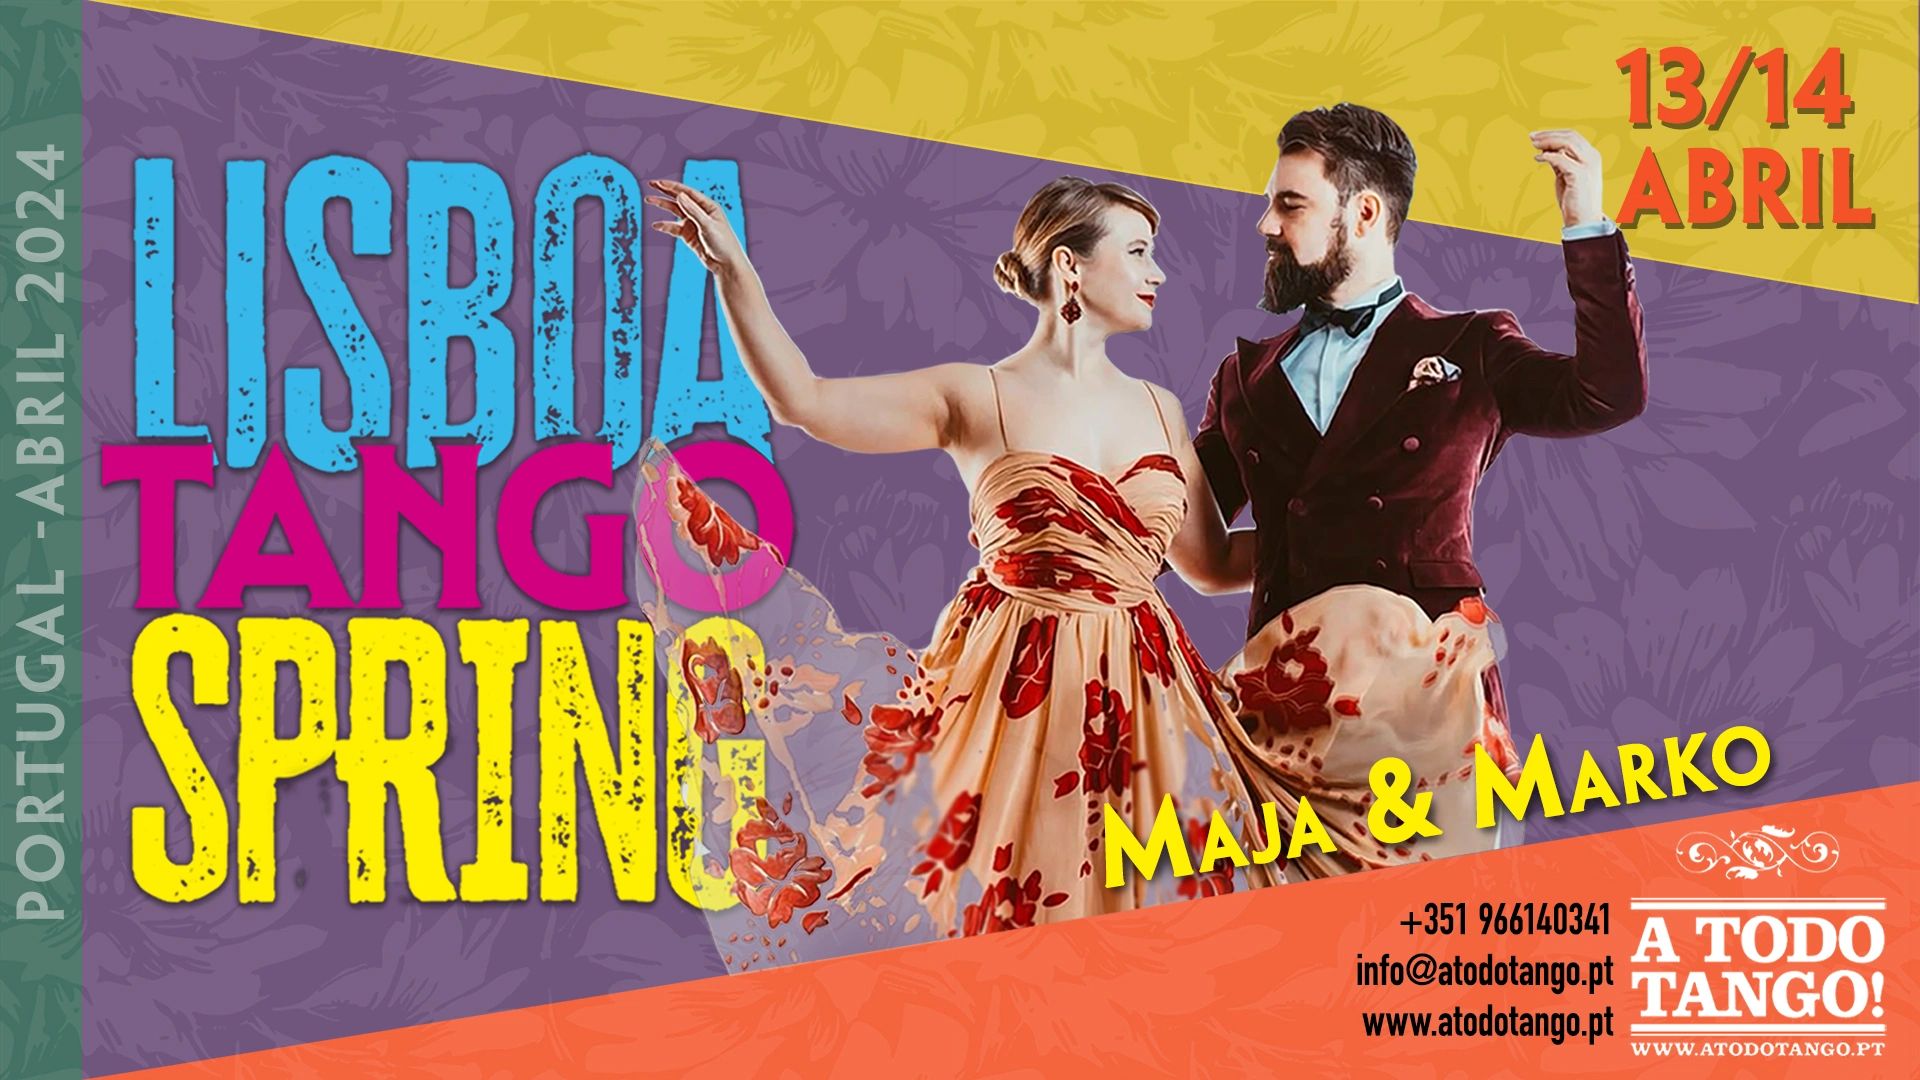 Lisbopa Tango Spring 13/14 Abril 2024 Lisboa Portugal Maja & Marko A Todo Tango! 
966140341